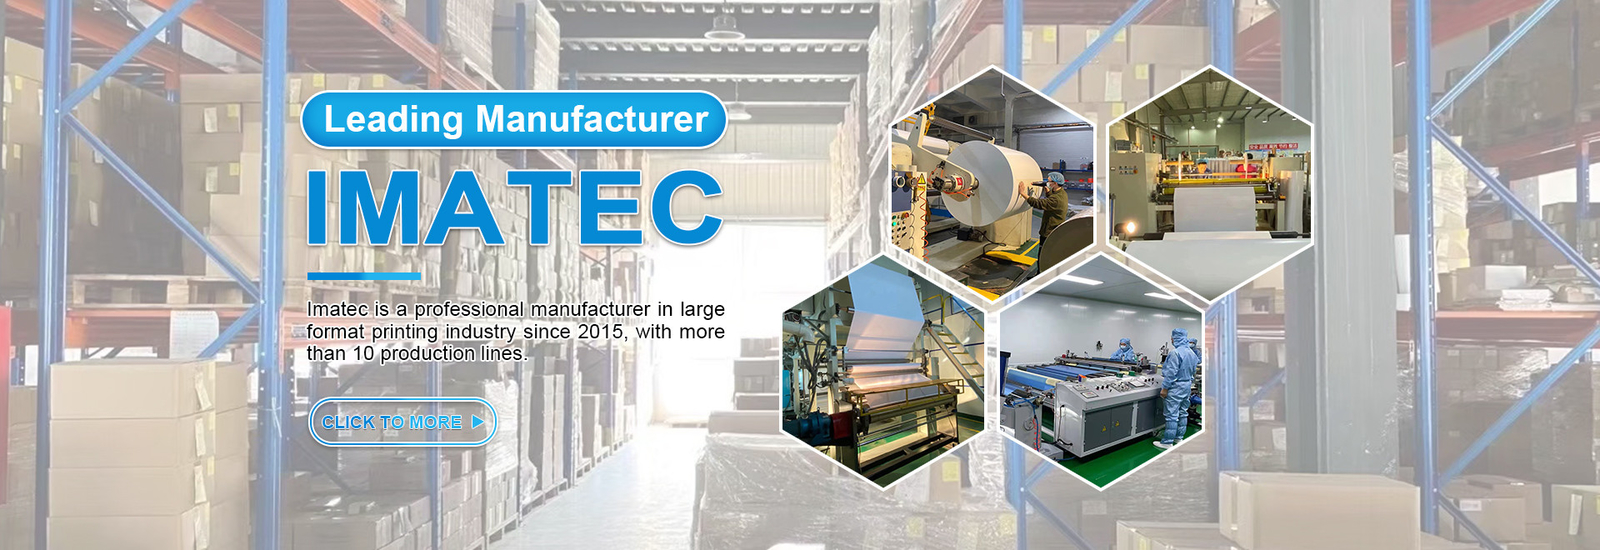 Imatec Imaging Co., Ltd. lini produksi pabrikan